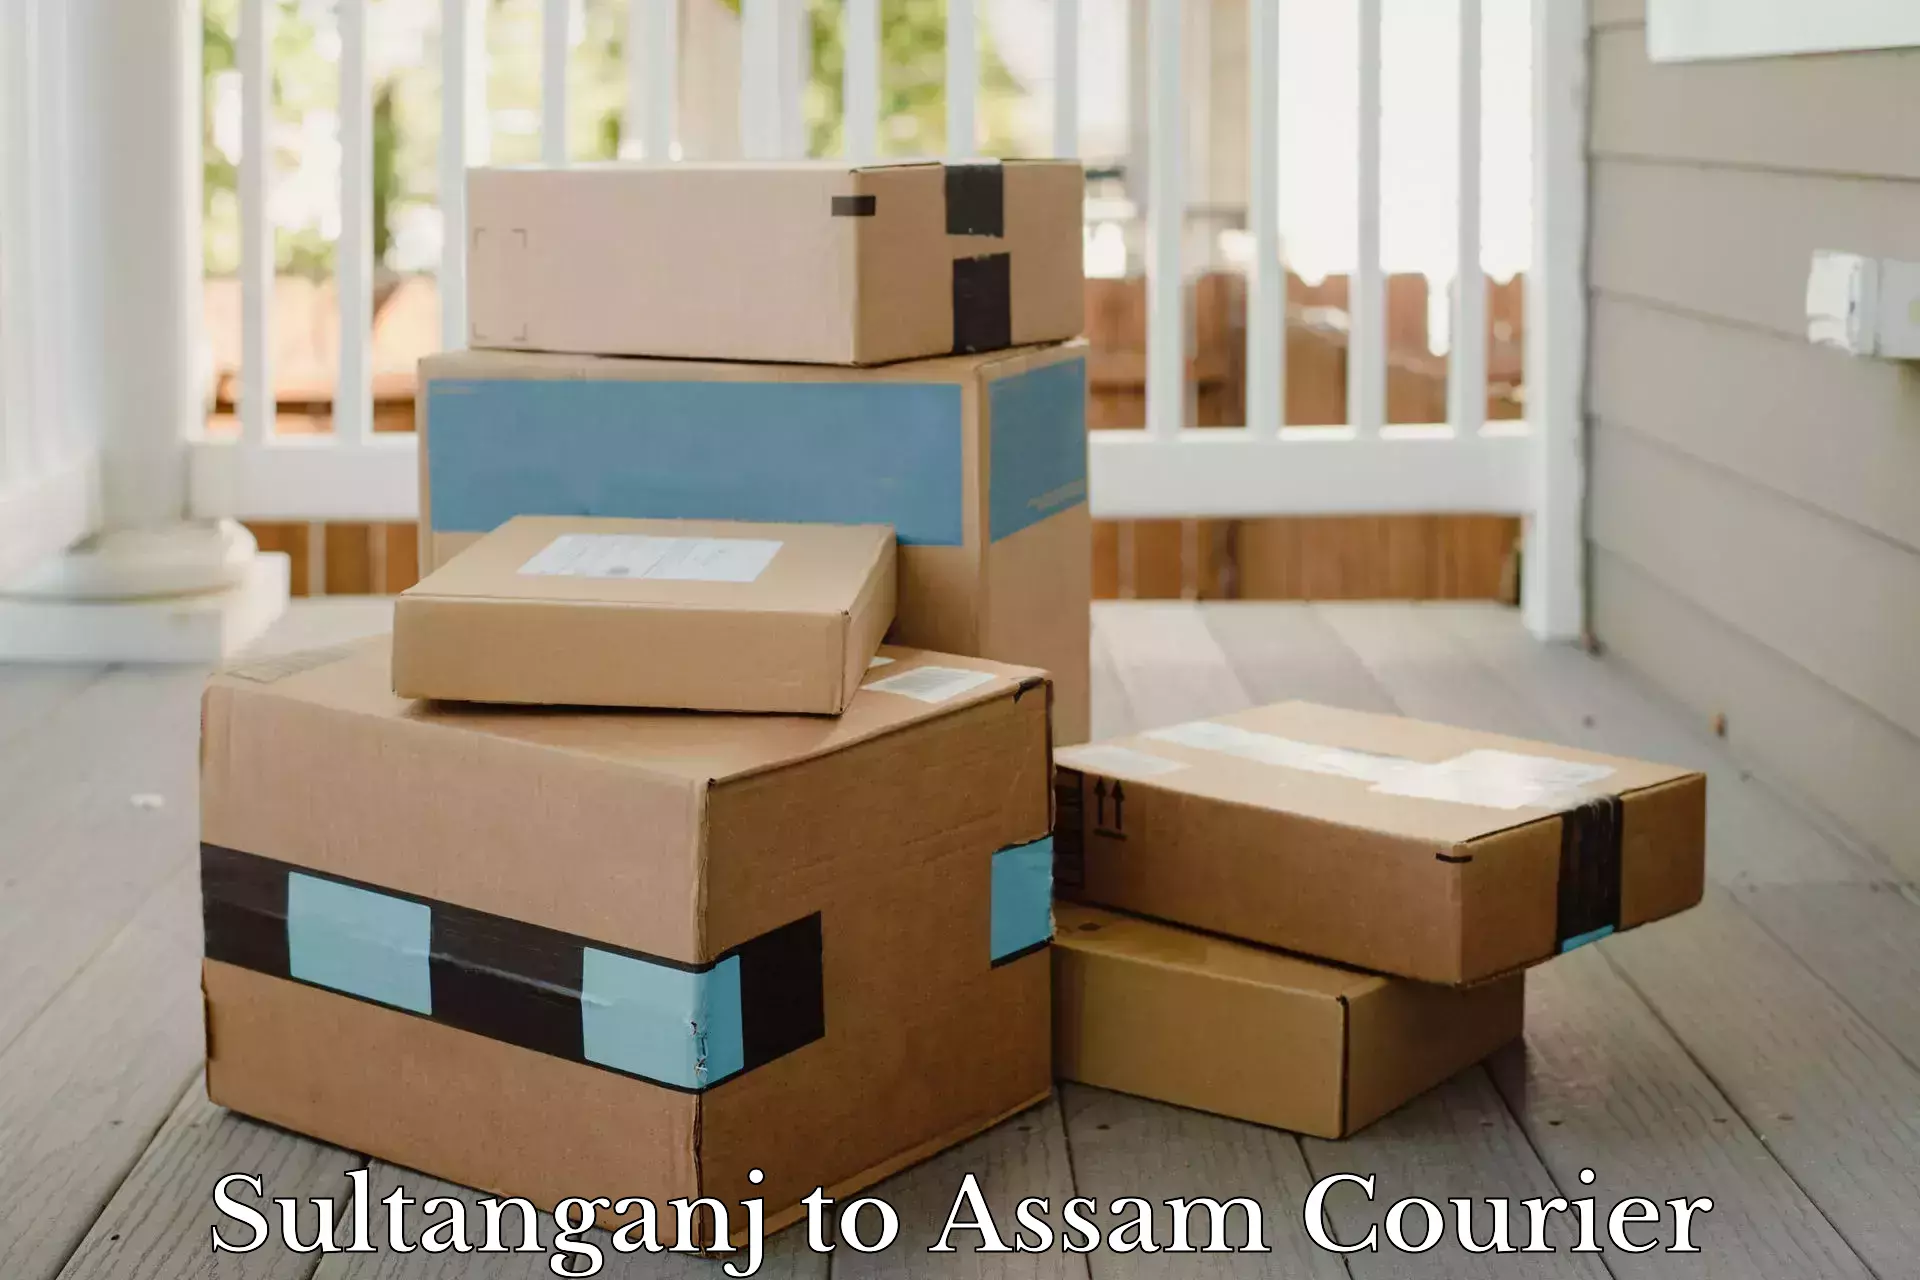 Courier service comparison in Sultanganj to Mangaldoi